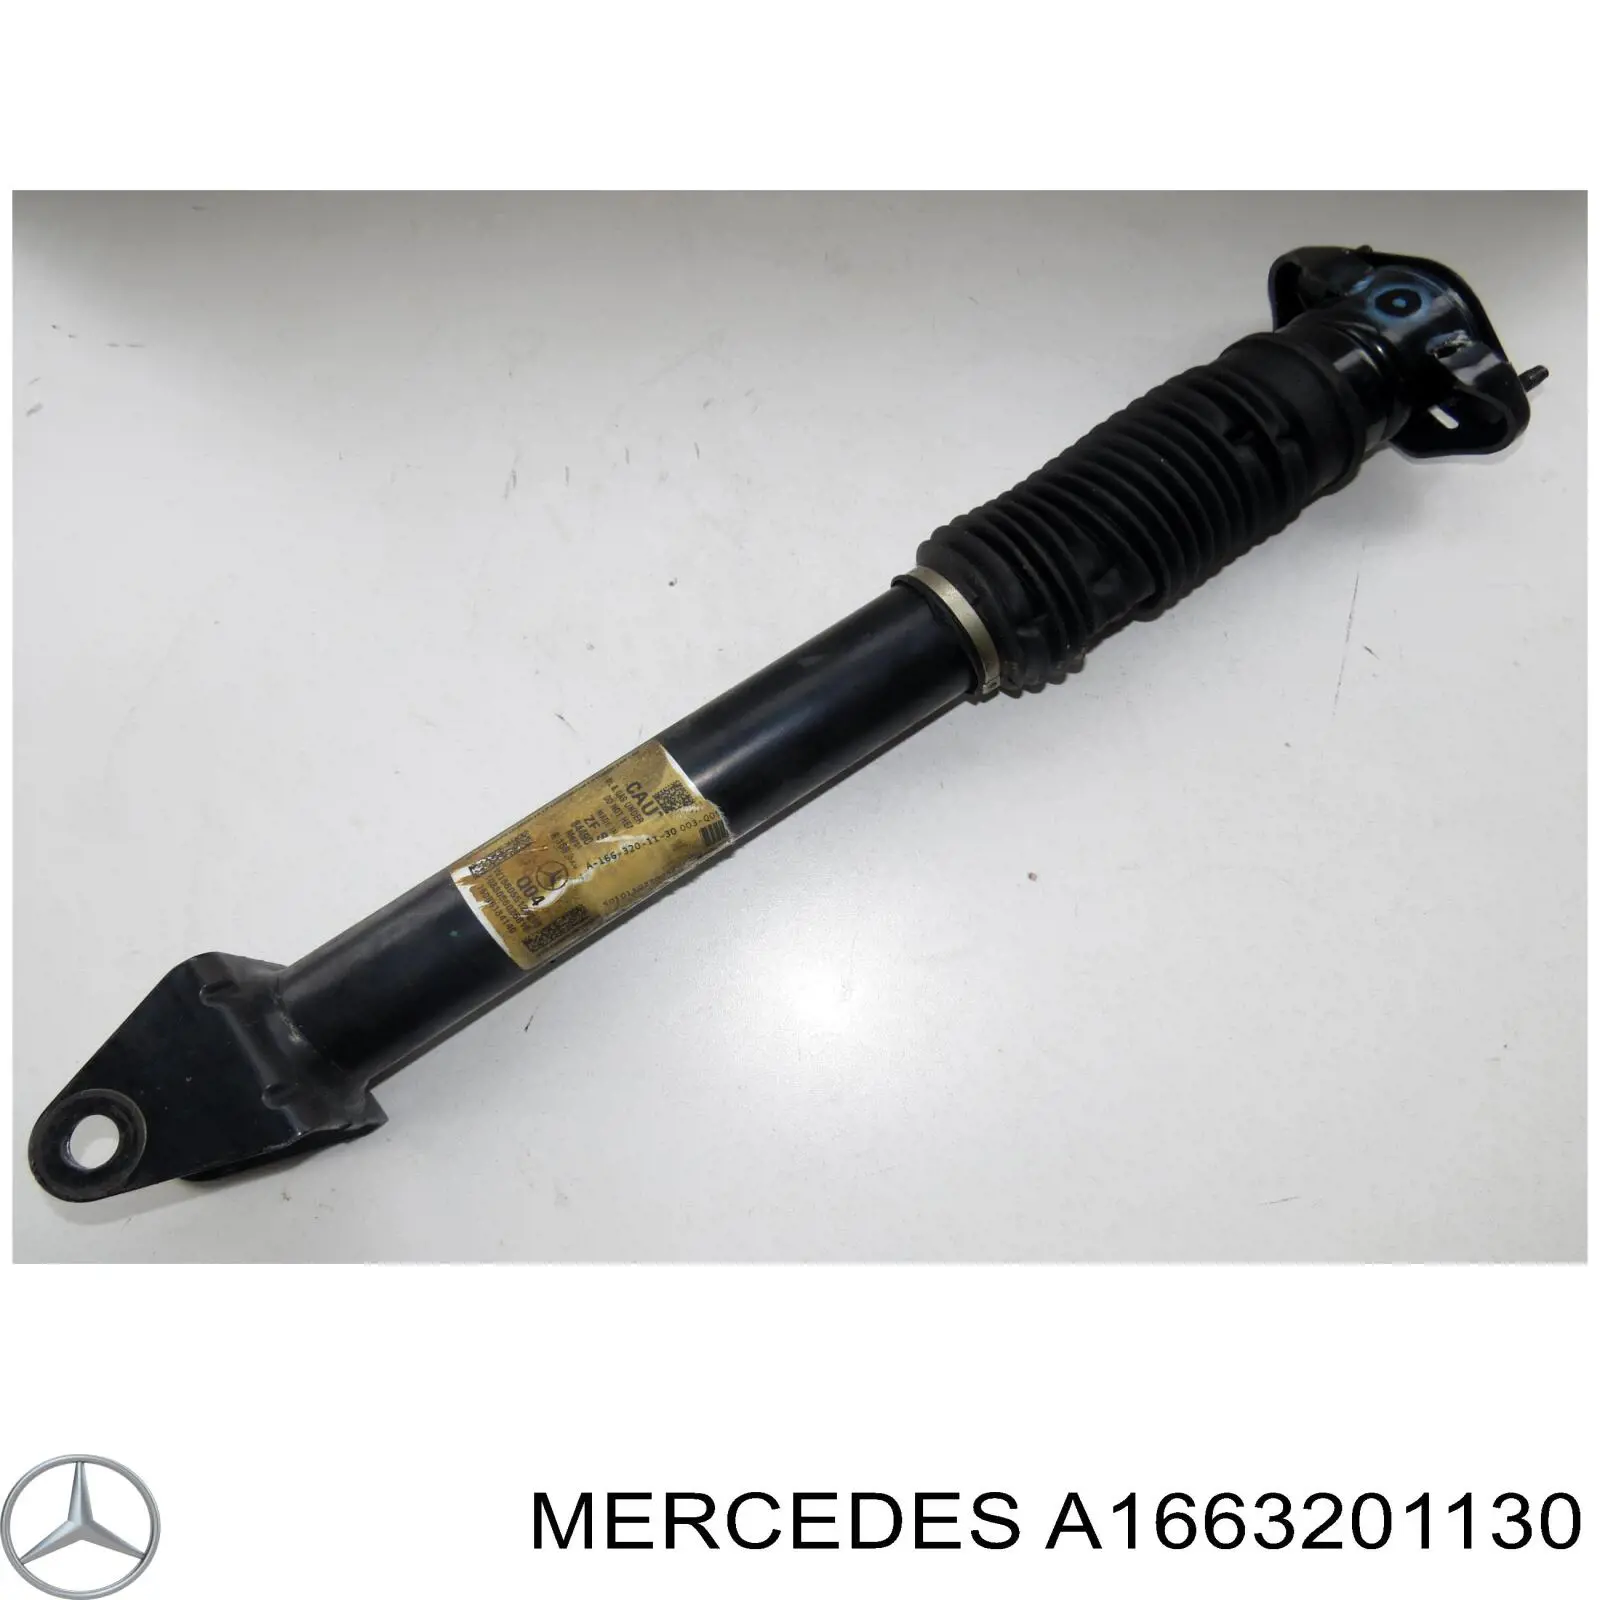 A1663201130 Mercedes амортизатор задний